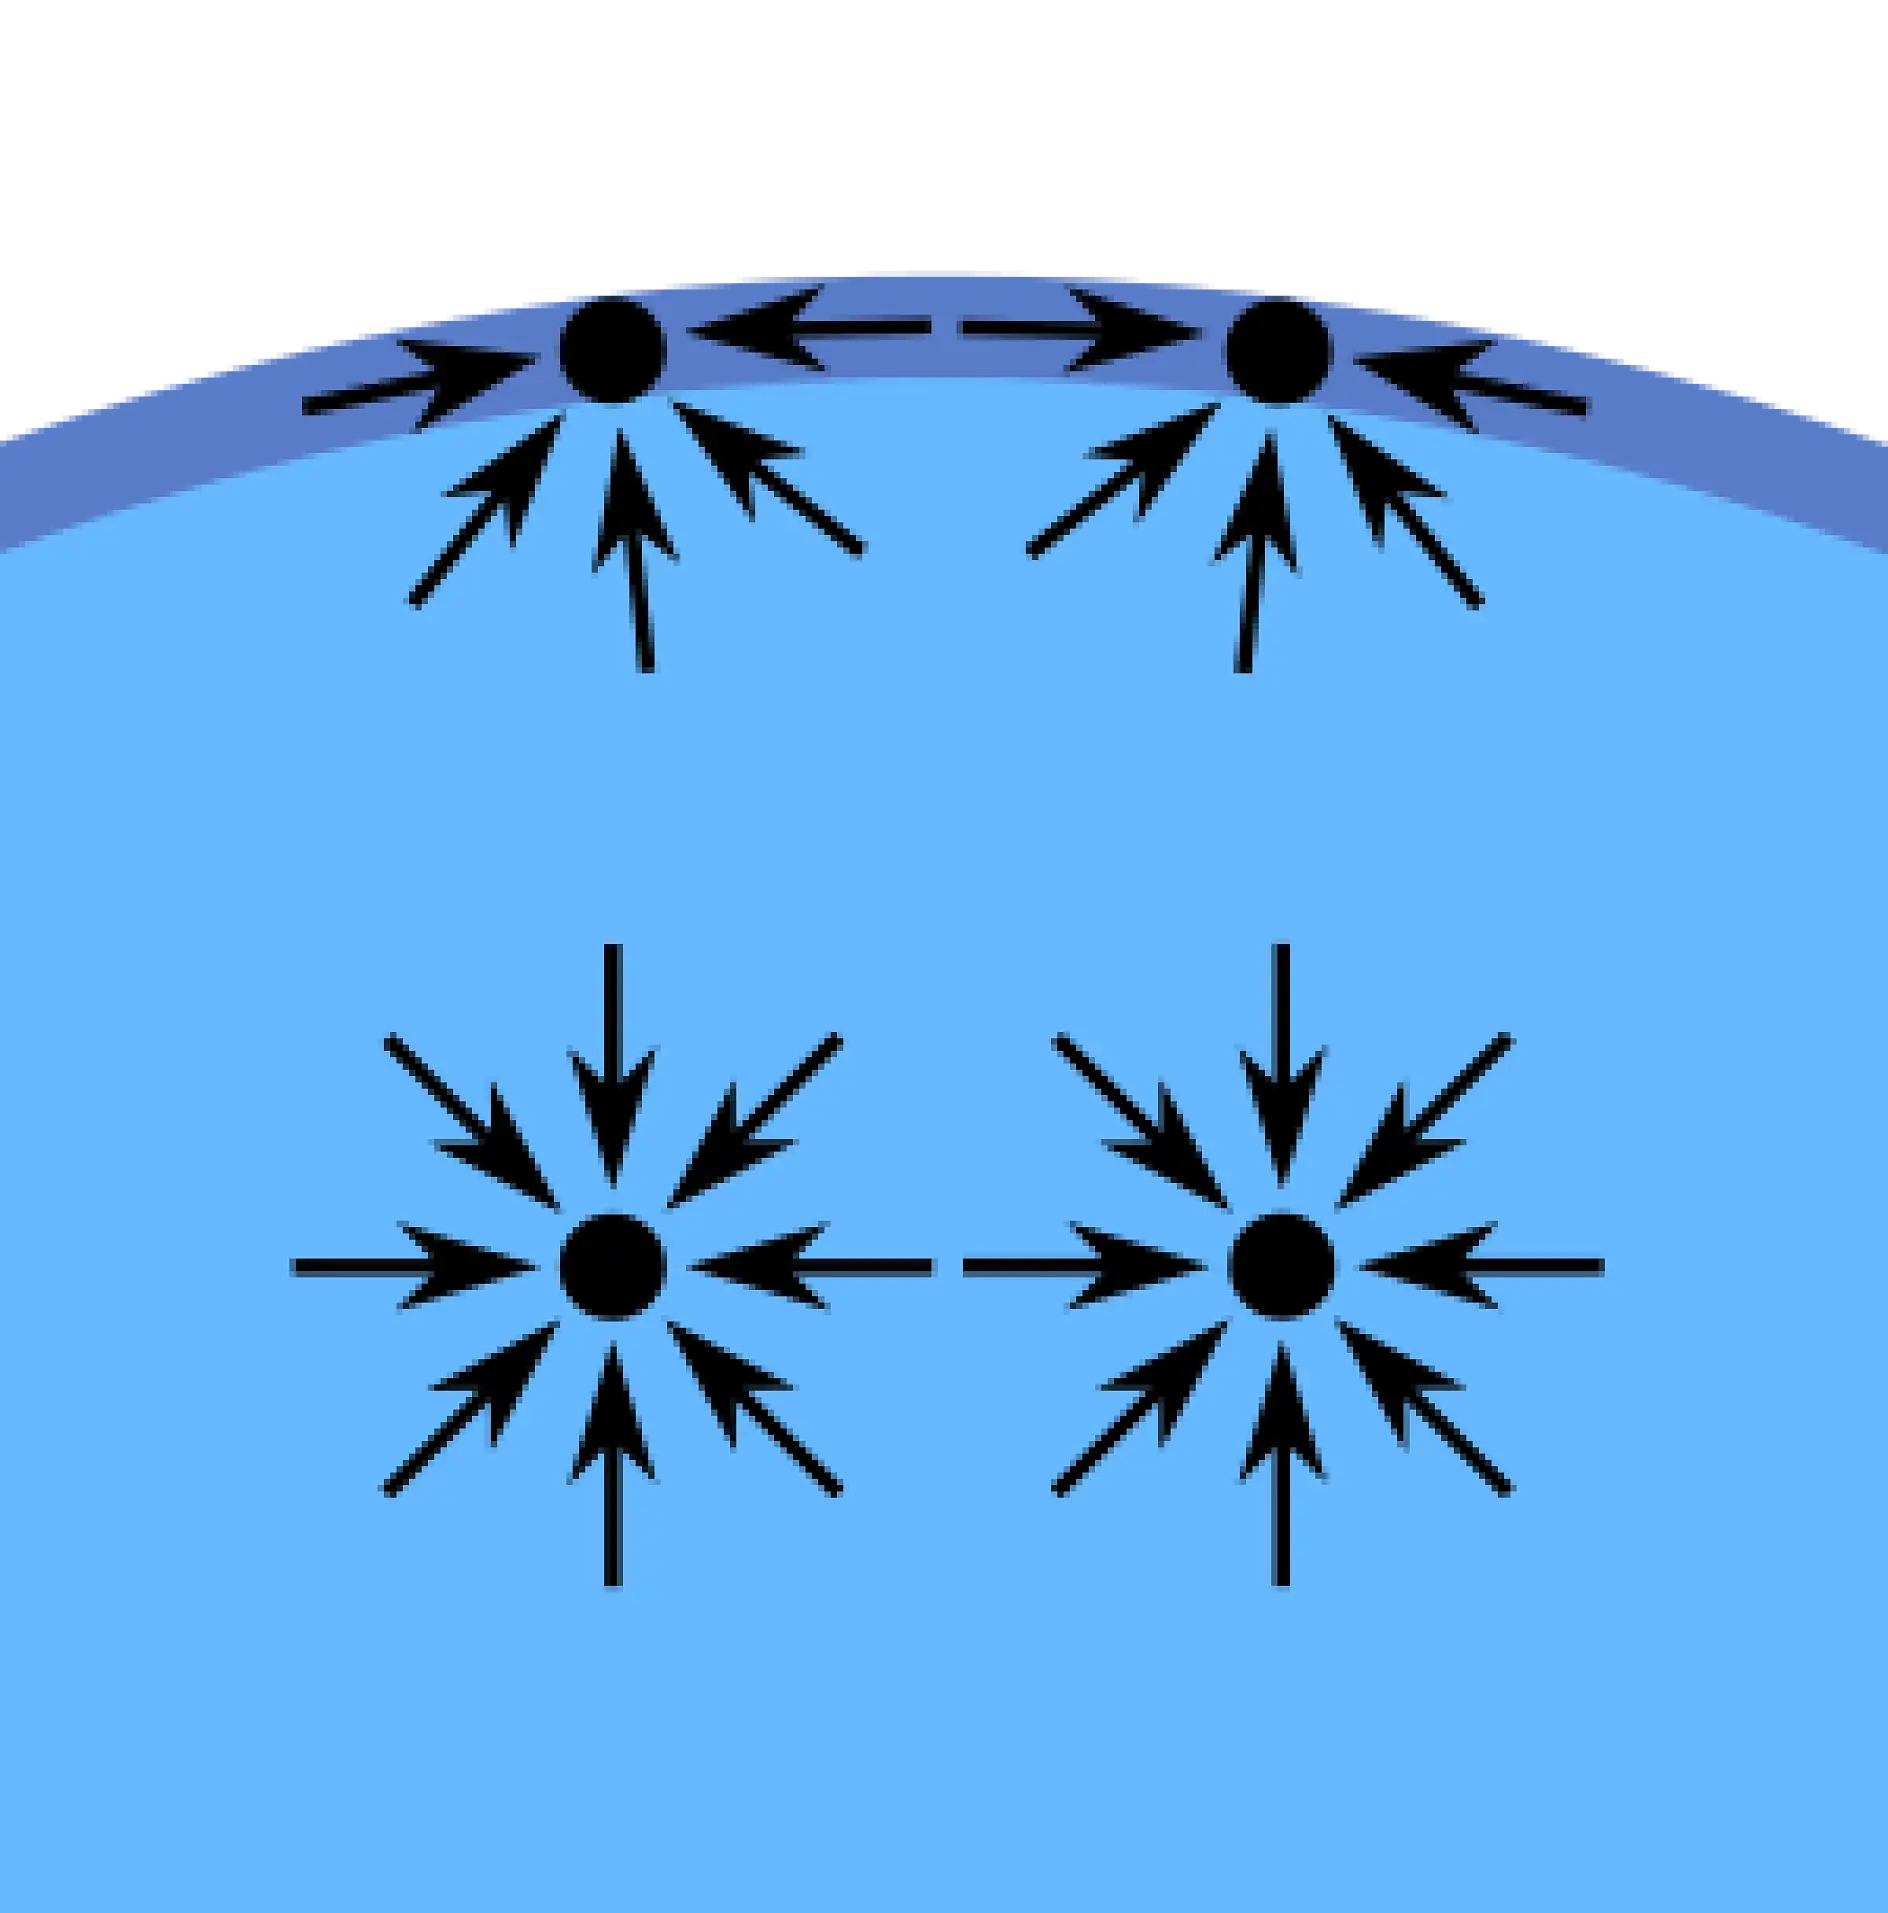 Siły kohezji – która oznacza przyciąganie (wewnętrzne) – pomiędzy cząsteczkami płynu tworzą zjawisko zwane „napięciem powierzchniowym”. Na przykład, cząsteczki na powierzchni wody w szklance nie mają innych cząsteczek wody wokół siebie. Są zatem przyciągane do wnętrza wody, zachodzi większa kohezja z cząsteczkami wody obok nich i poniżej. To przyciąganie jest większe niż do cząsteczek powietrza powyżej. W efekcie ta wewnętrzna siła tworzy powierzchnię, która oddziela wodę i powietrze.